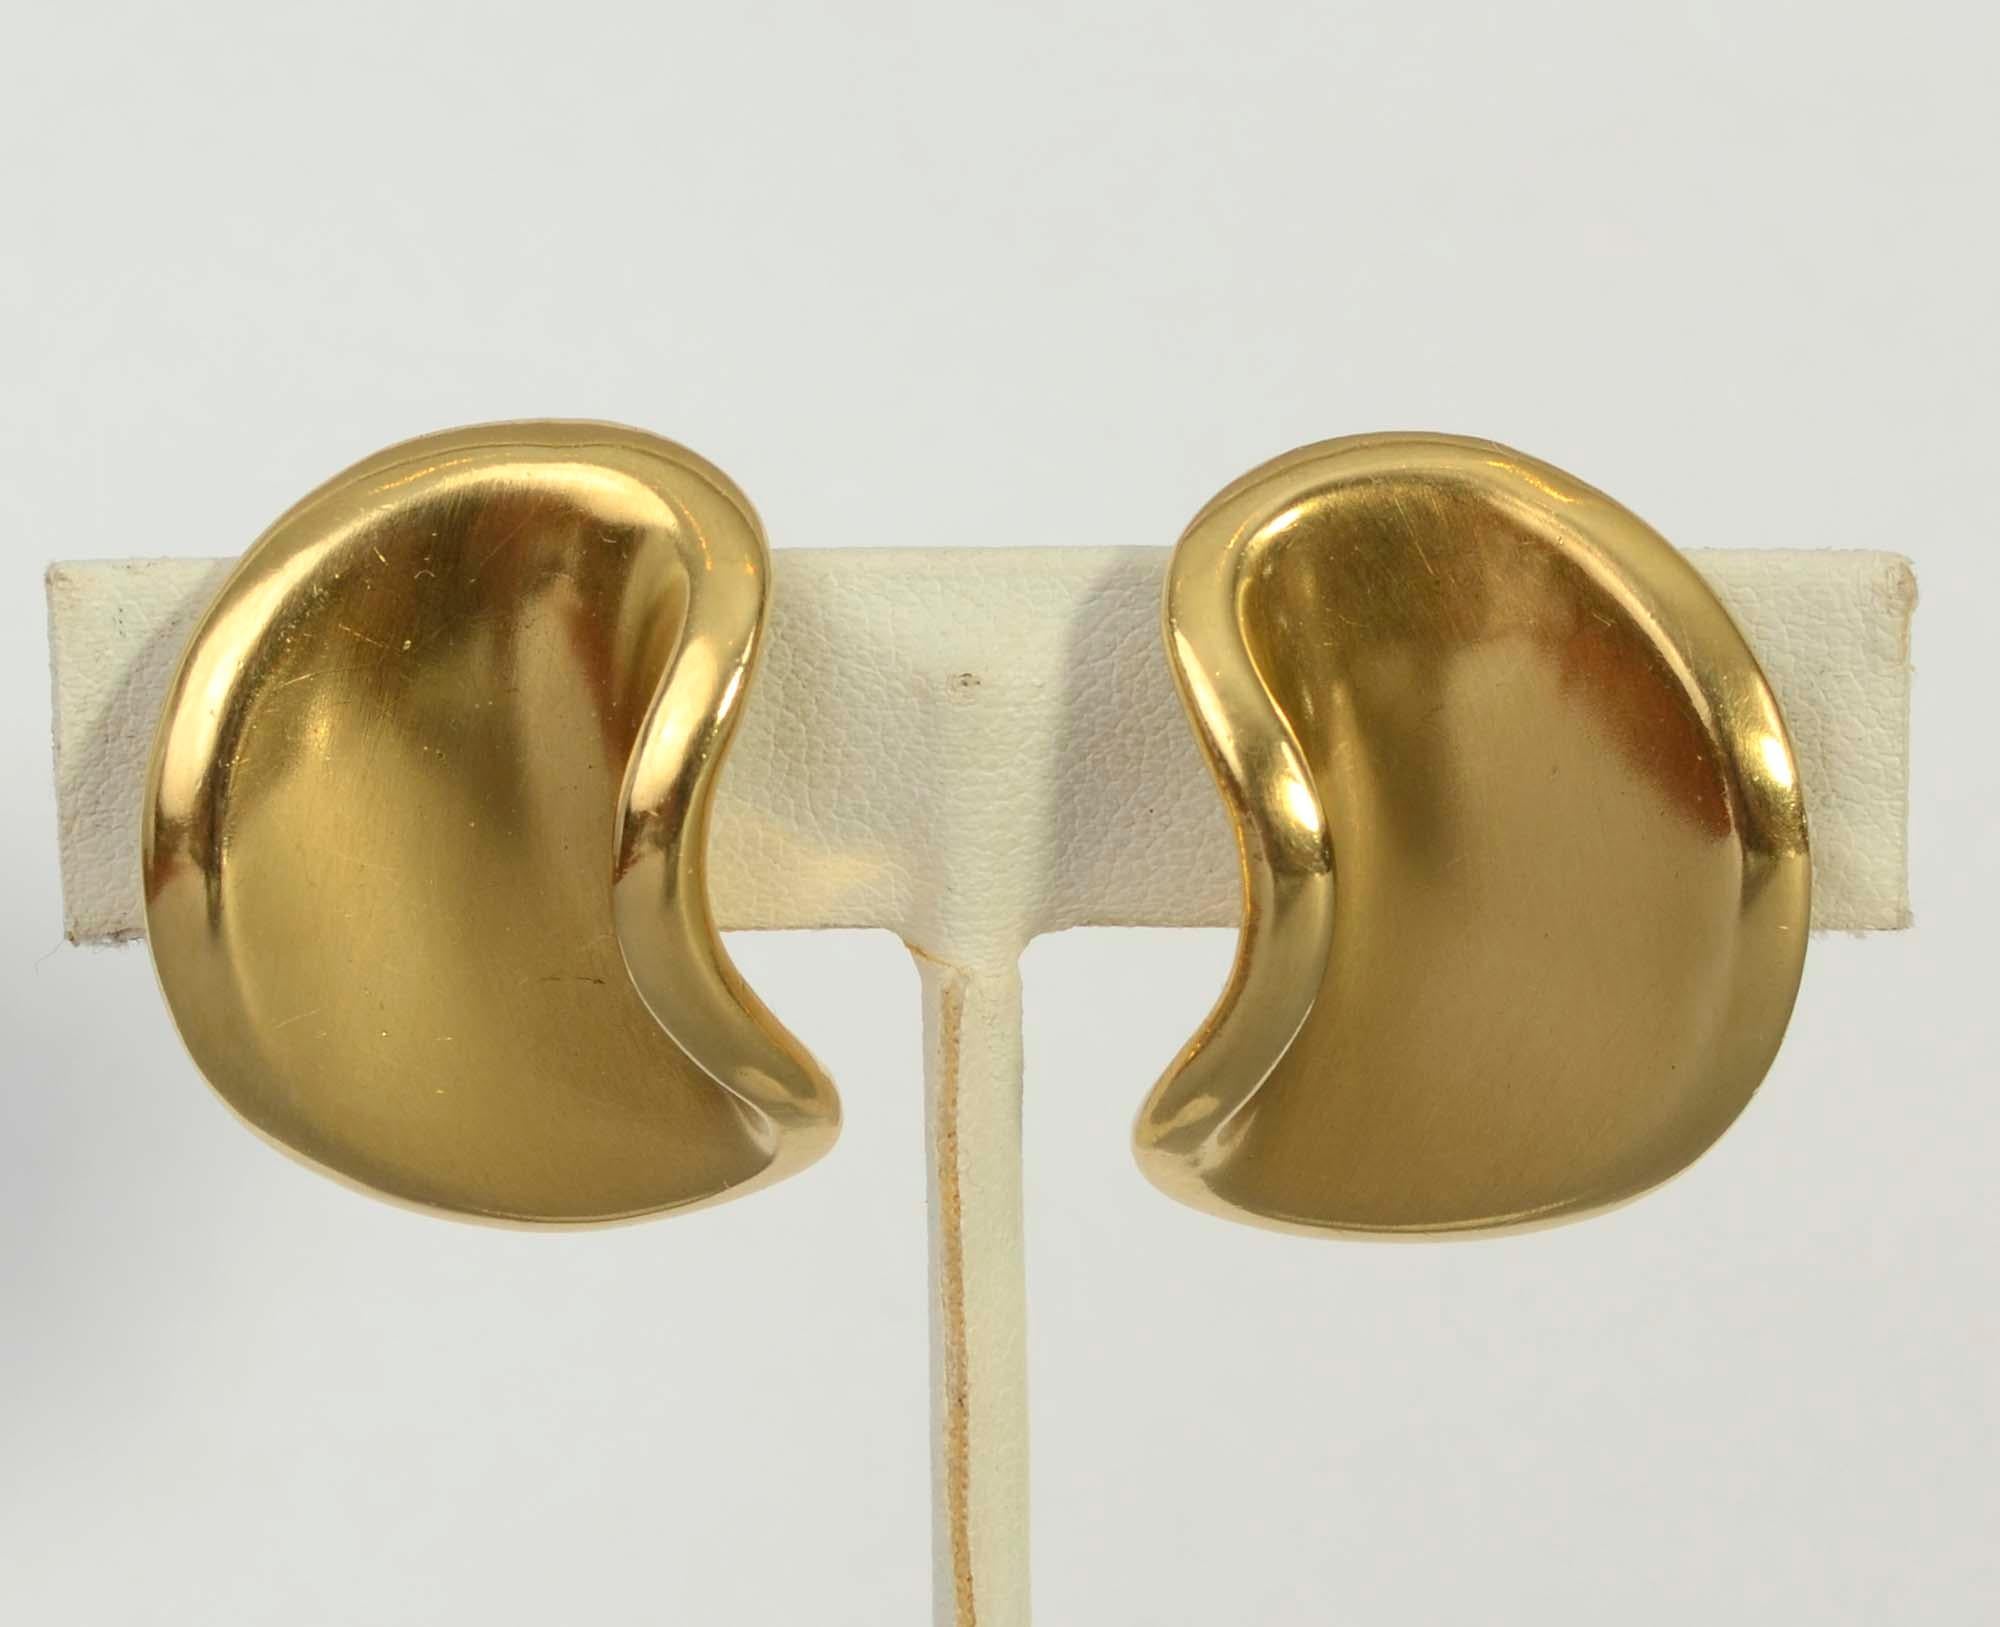 Angela Cummings Ohrringe aus 18 Karat Gold, die sowohl in der äußeren als auch in der inneren Form schön geschwungen sind. Ein goldenes Band umrahmt das äußere Design. Die Ohrringe haben eine konkave Lima-Bohnen-Form, die dem anmutigen Design viel